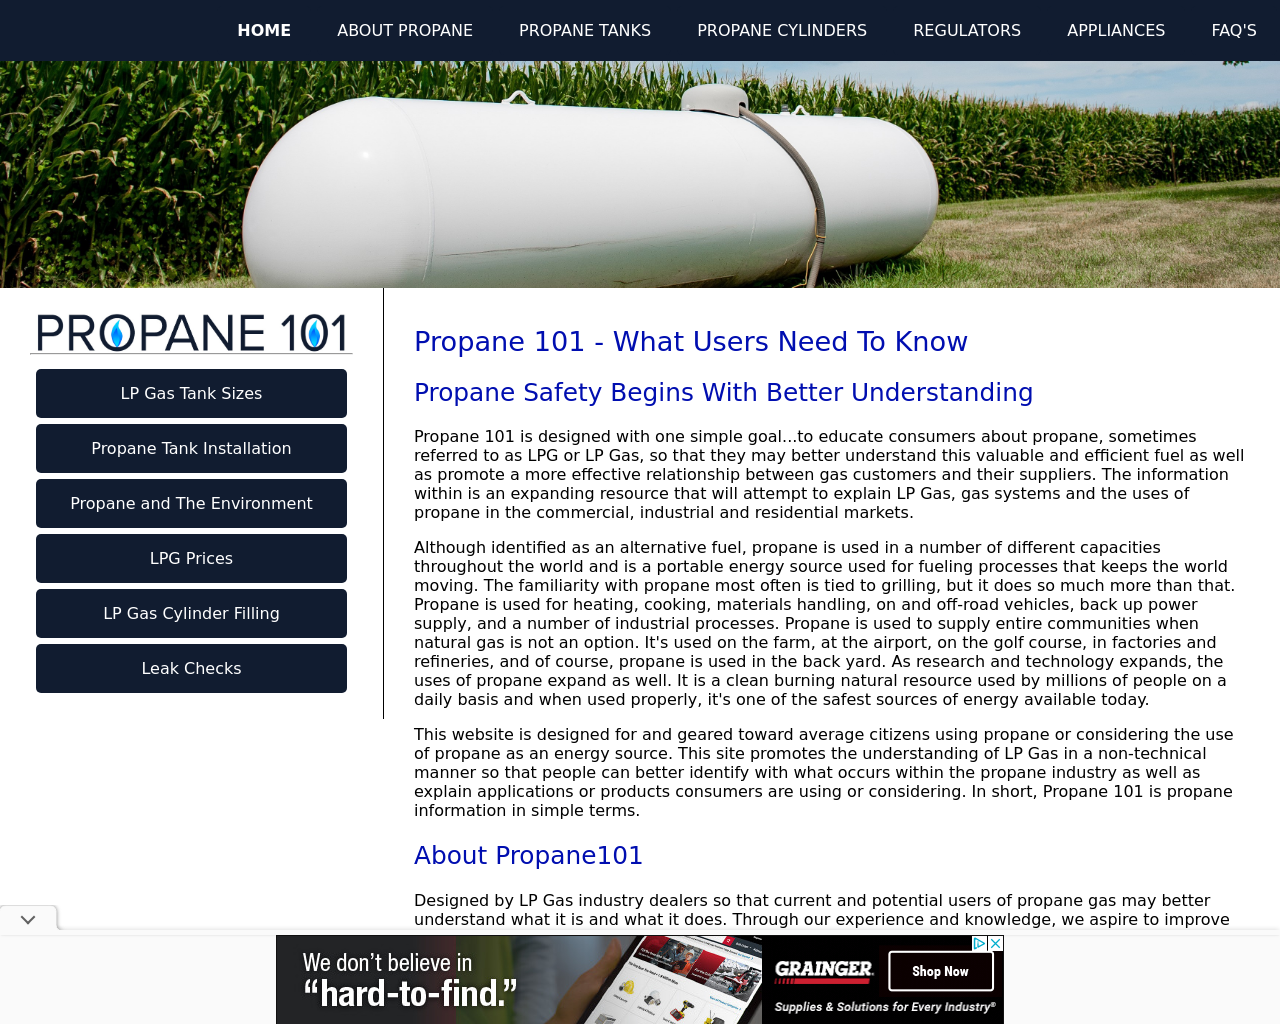 propane101.com